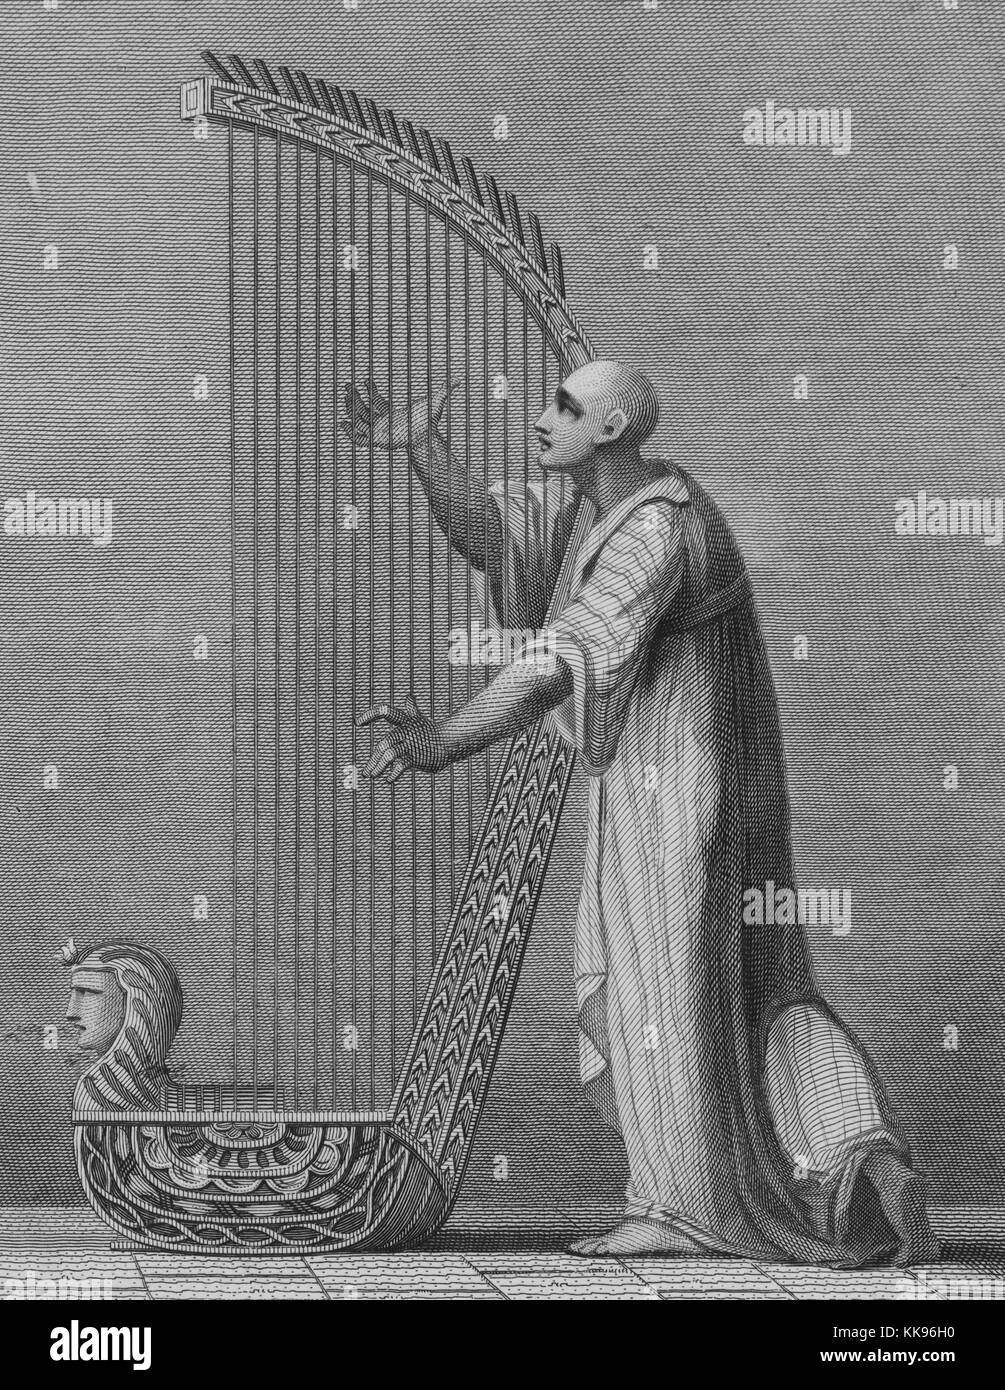 Le illustrazioni incise di un dipinto ad affresco presso i sepolcri di Tebe, di un uomo in piedi, la riproduzione di un'arpa da James Bruce, 1805. Dalla Biblioteca Pubblica di New York. Foto Stock